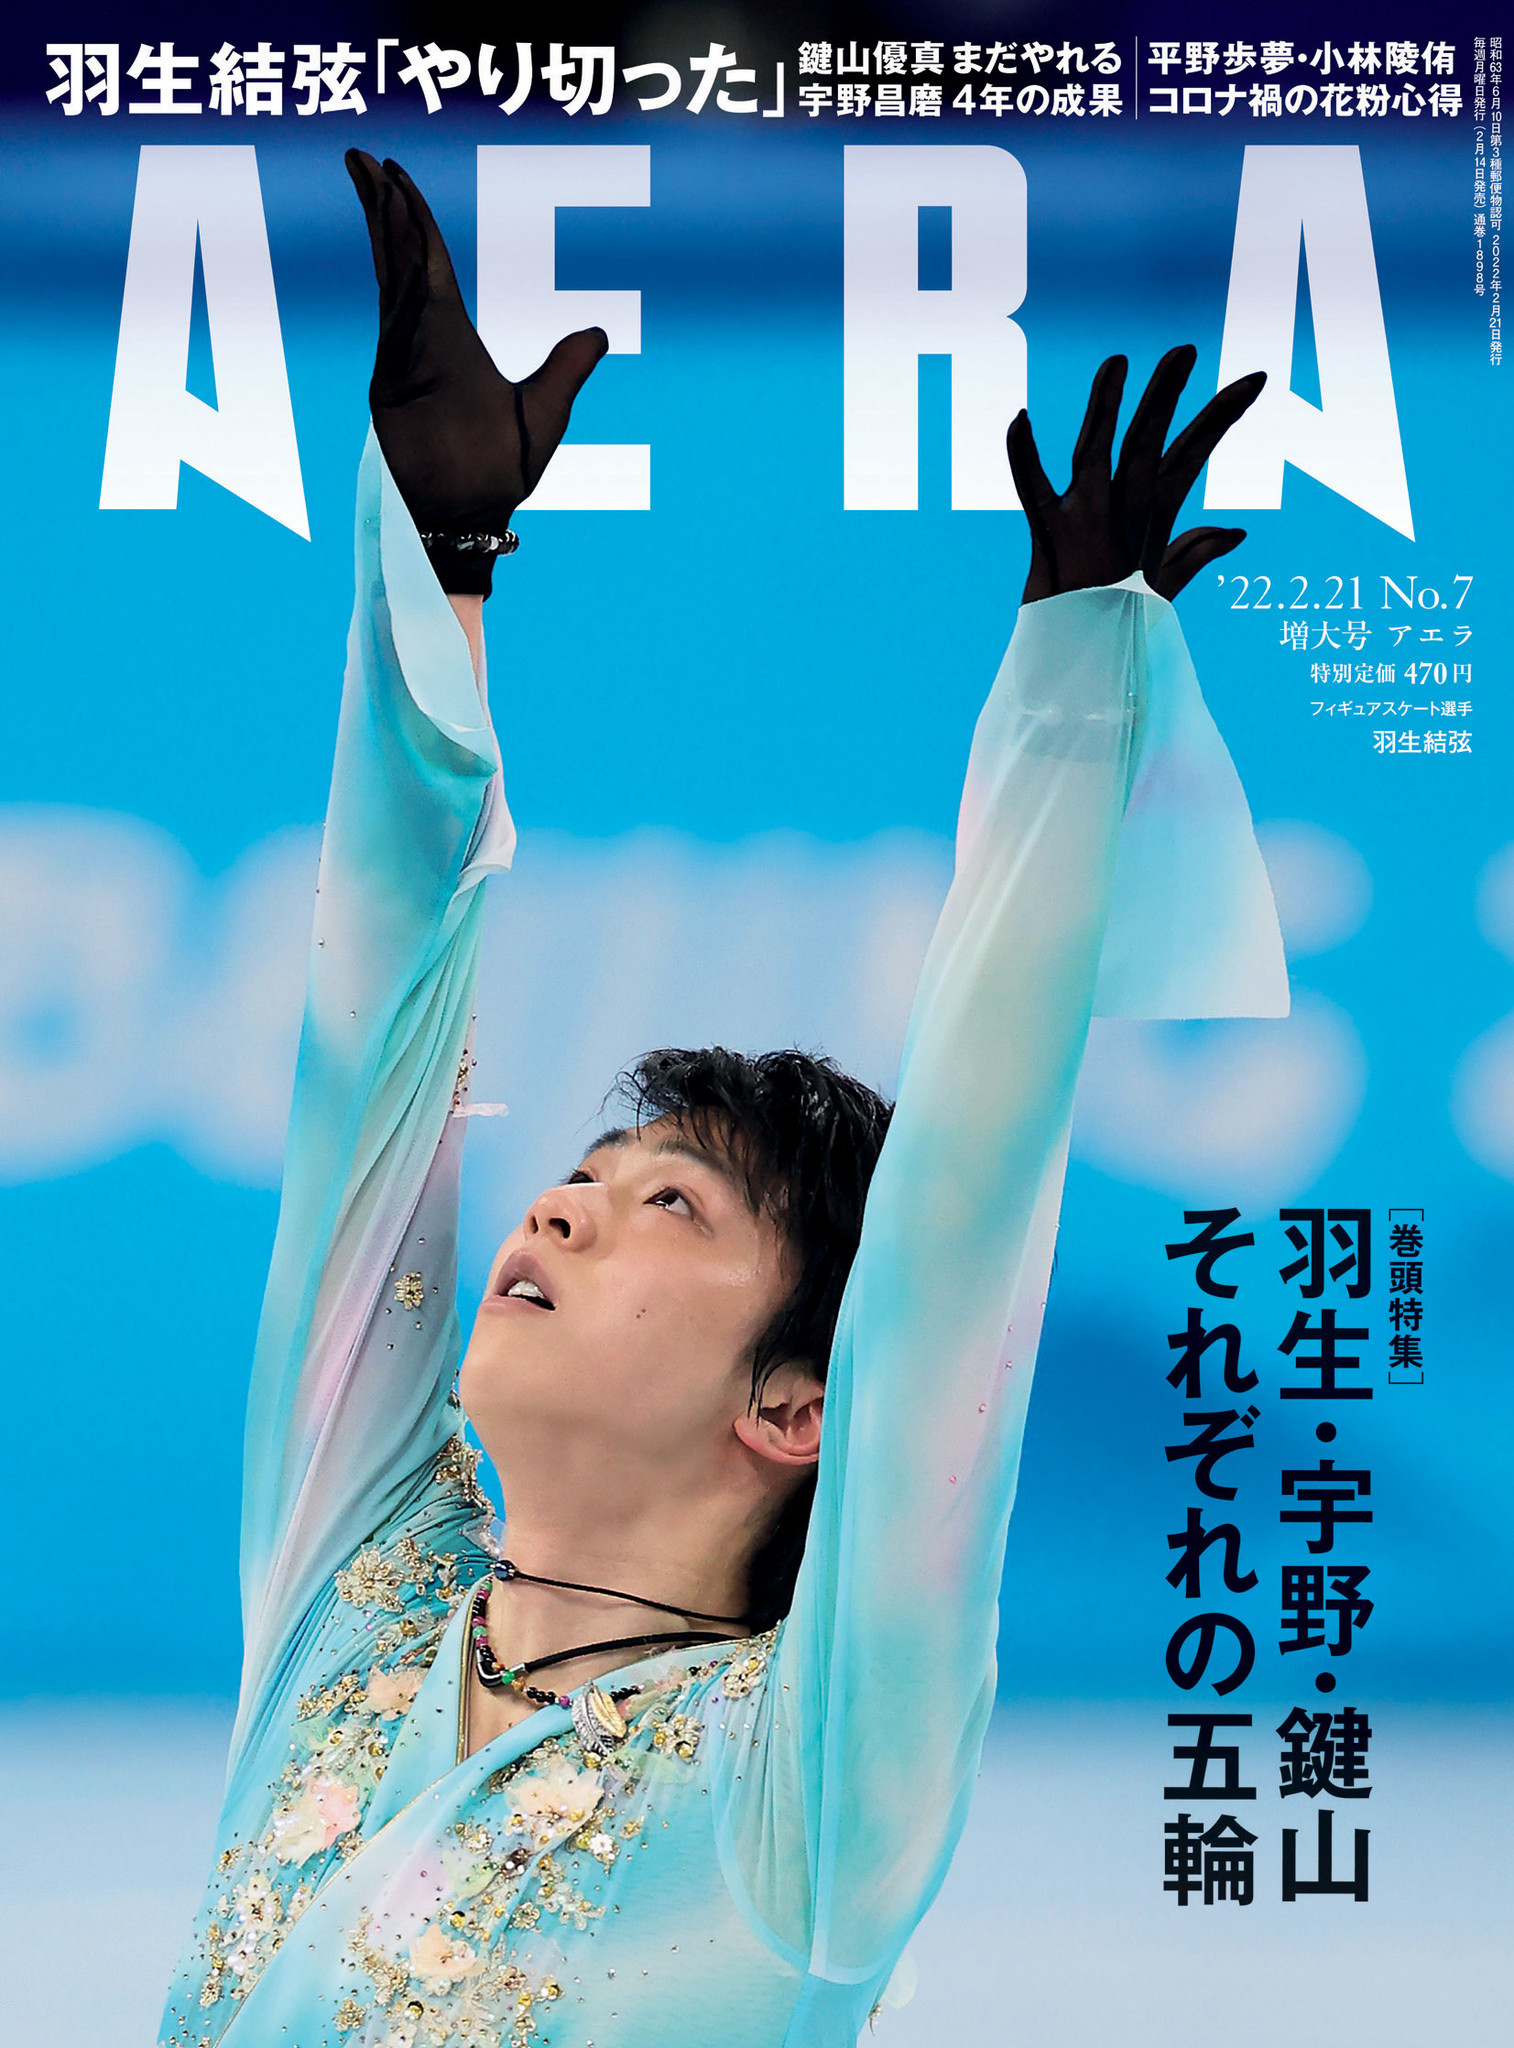 2月14日発売のAERA巻頭特集は「羽生・宇野・鍵山 それぞれの五輪